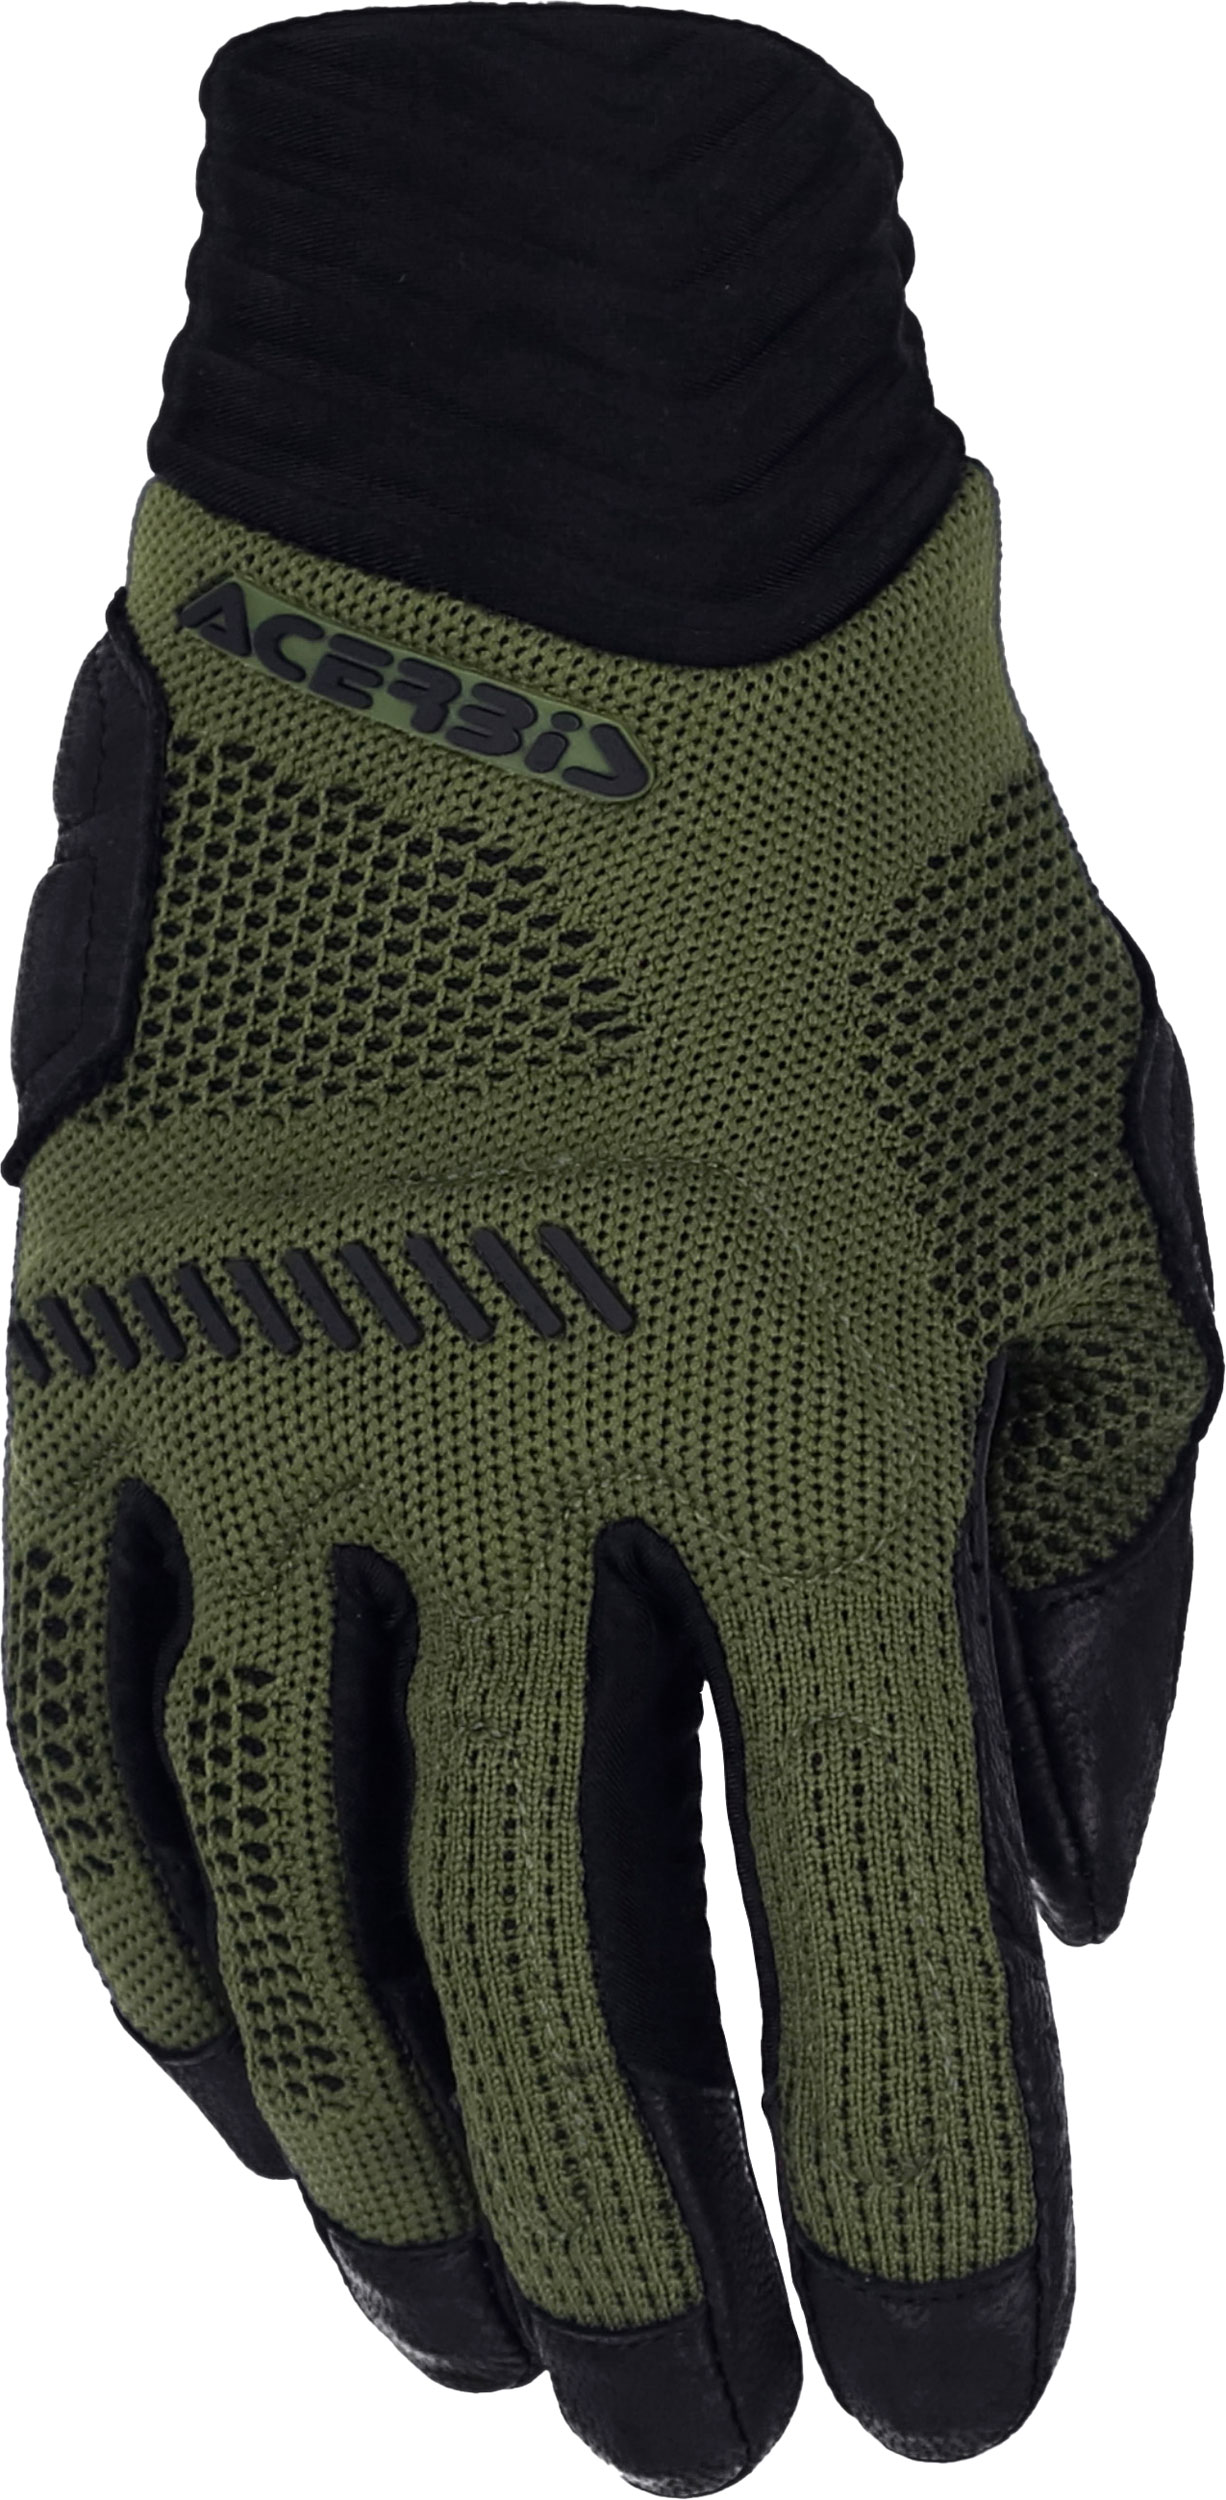 Acerbis Maya, gloves , color: Dark Green/Black , size: 3XL